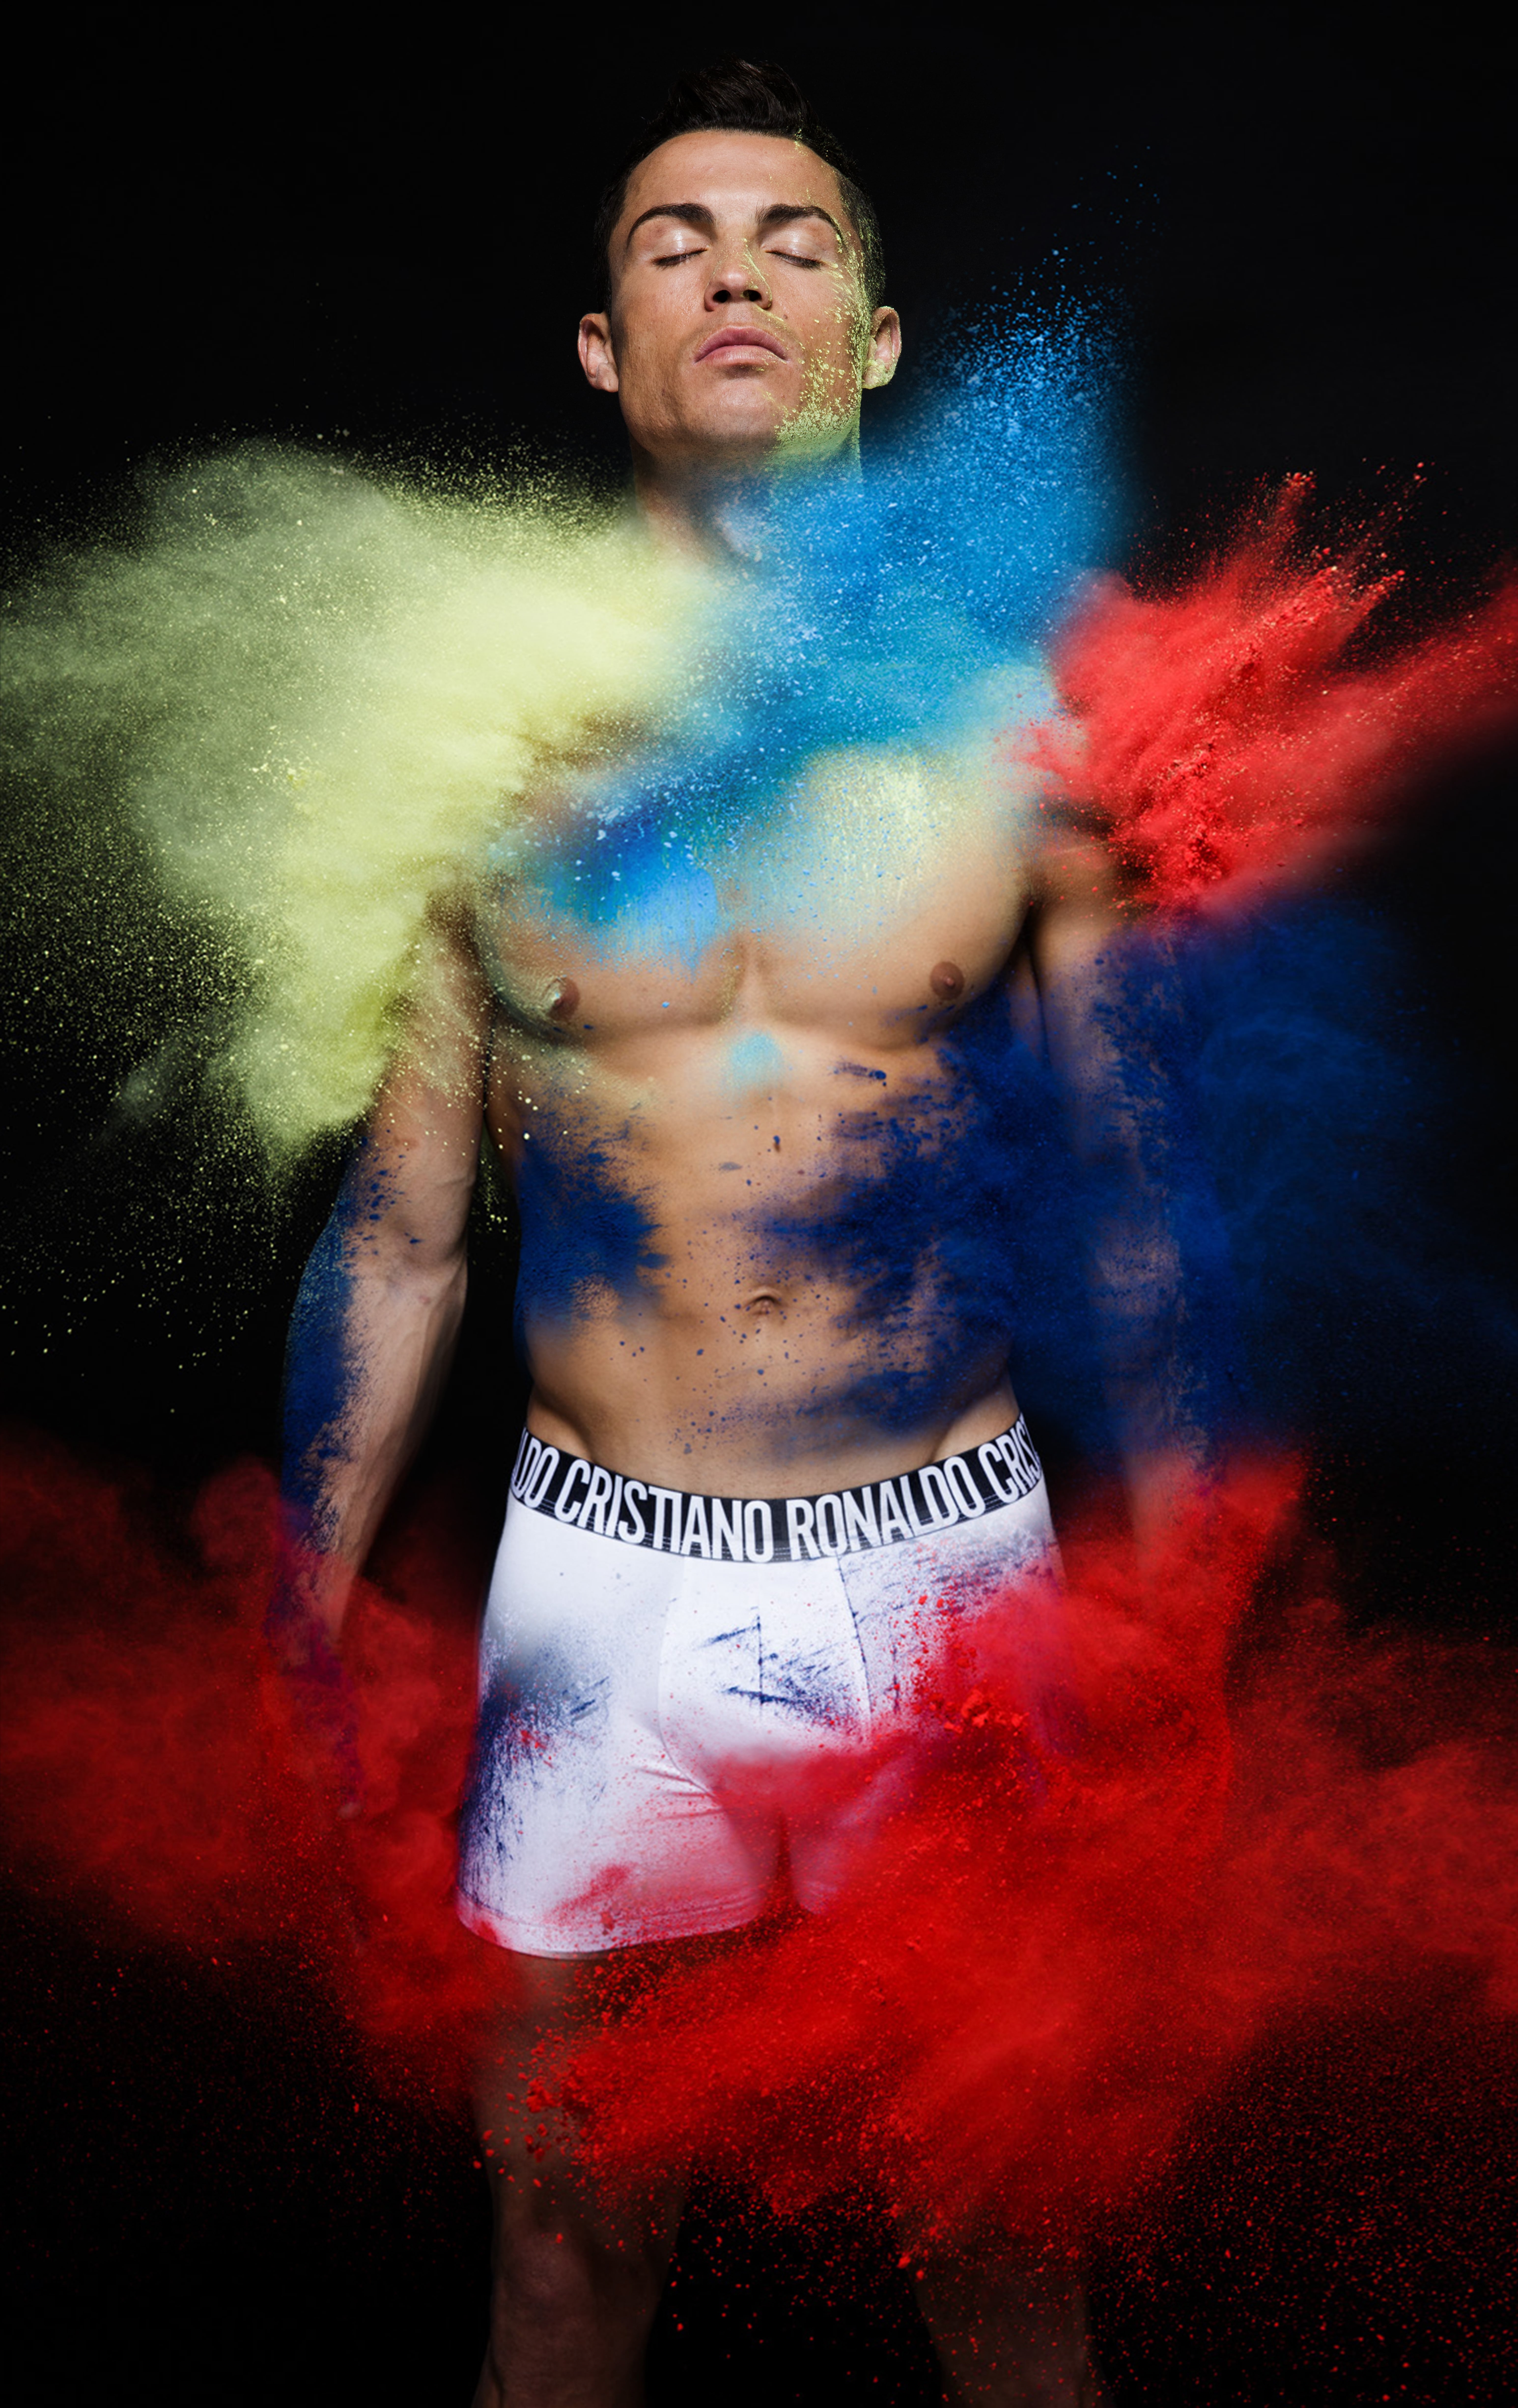 automat global rangle Cristiano Ronaldo's Underwear Campaign Pictures | POPSUGAR Latina